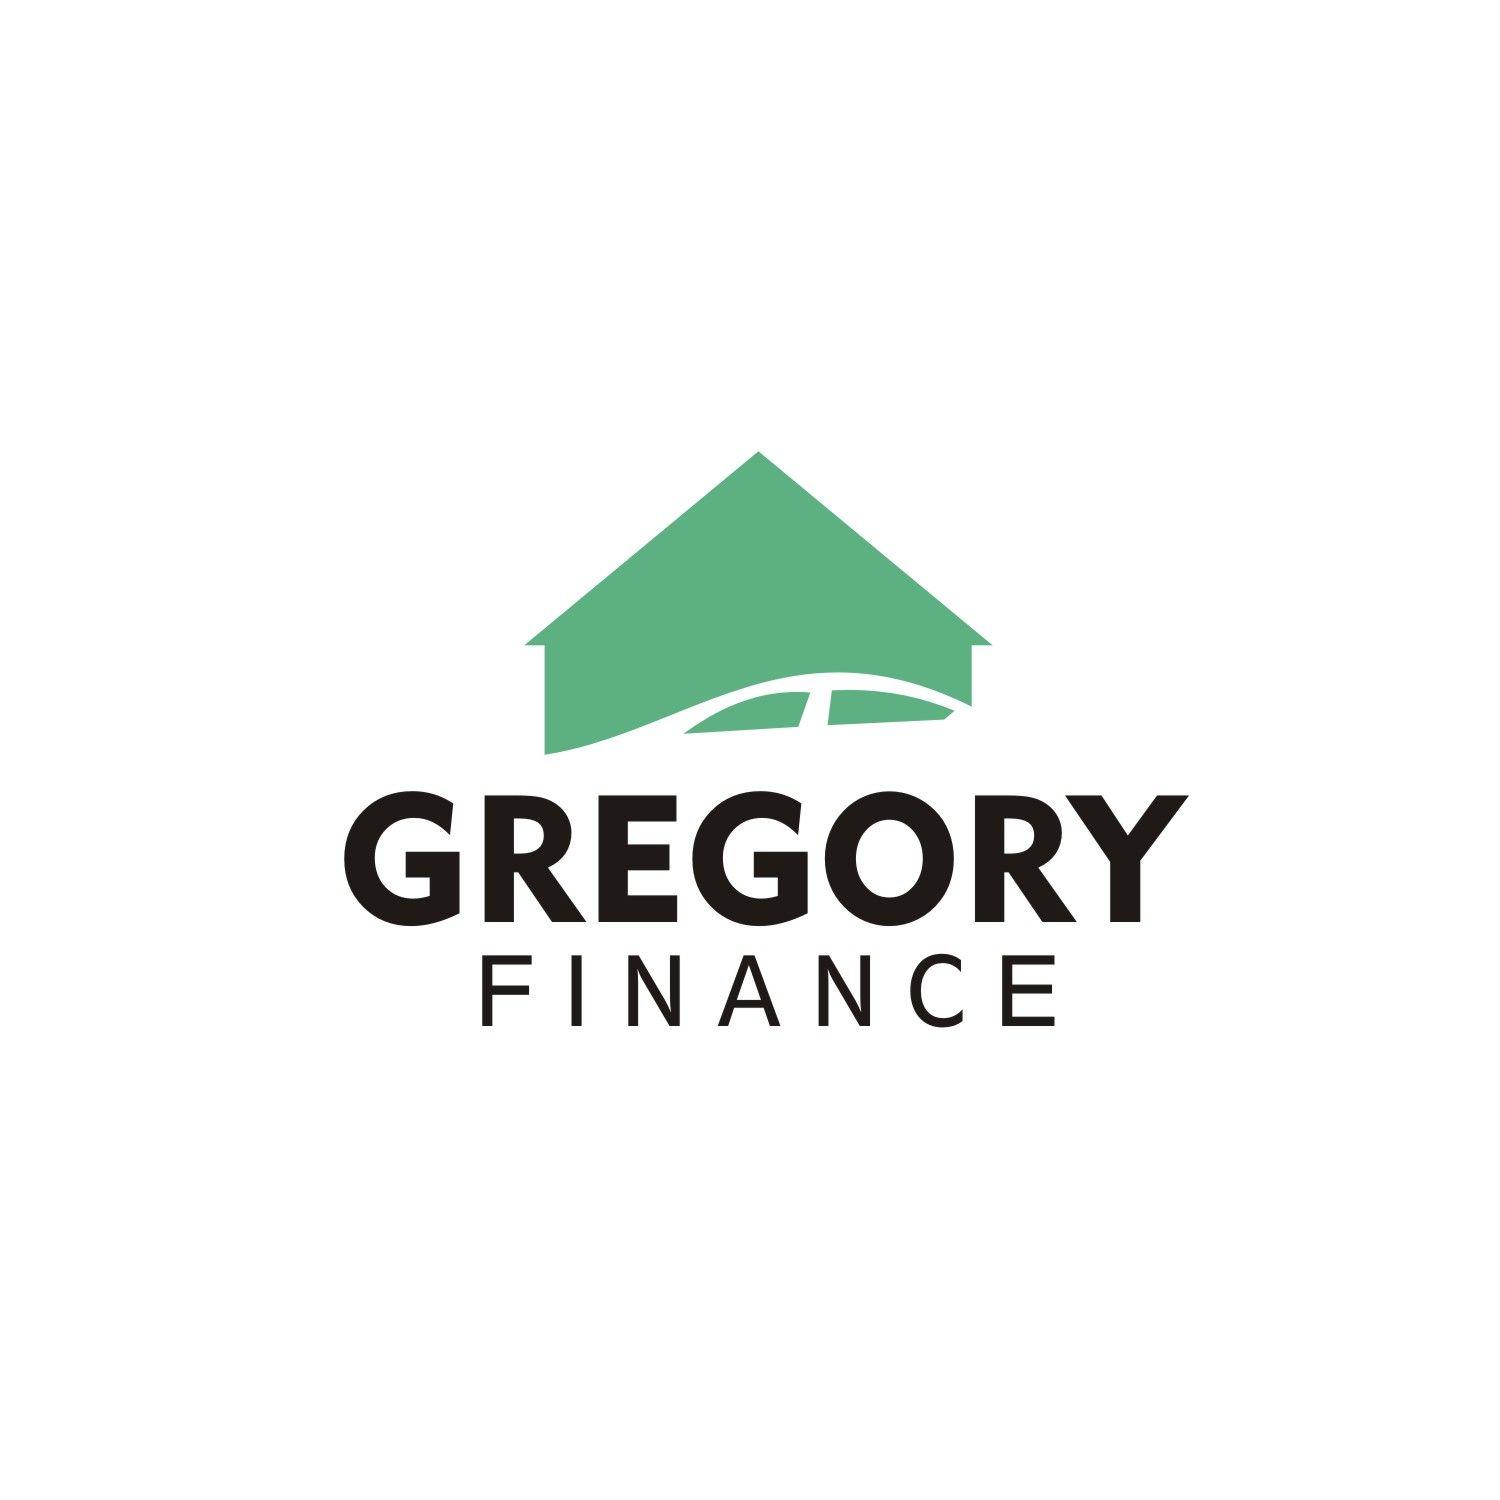 Gregory Logo - Elegant, Modern, Finance Logo Design for Gregory FInance by van575 ...